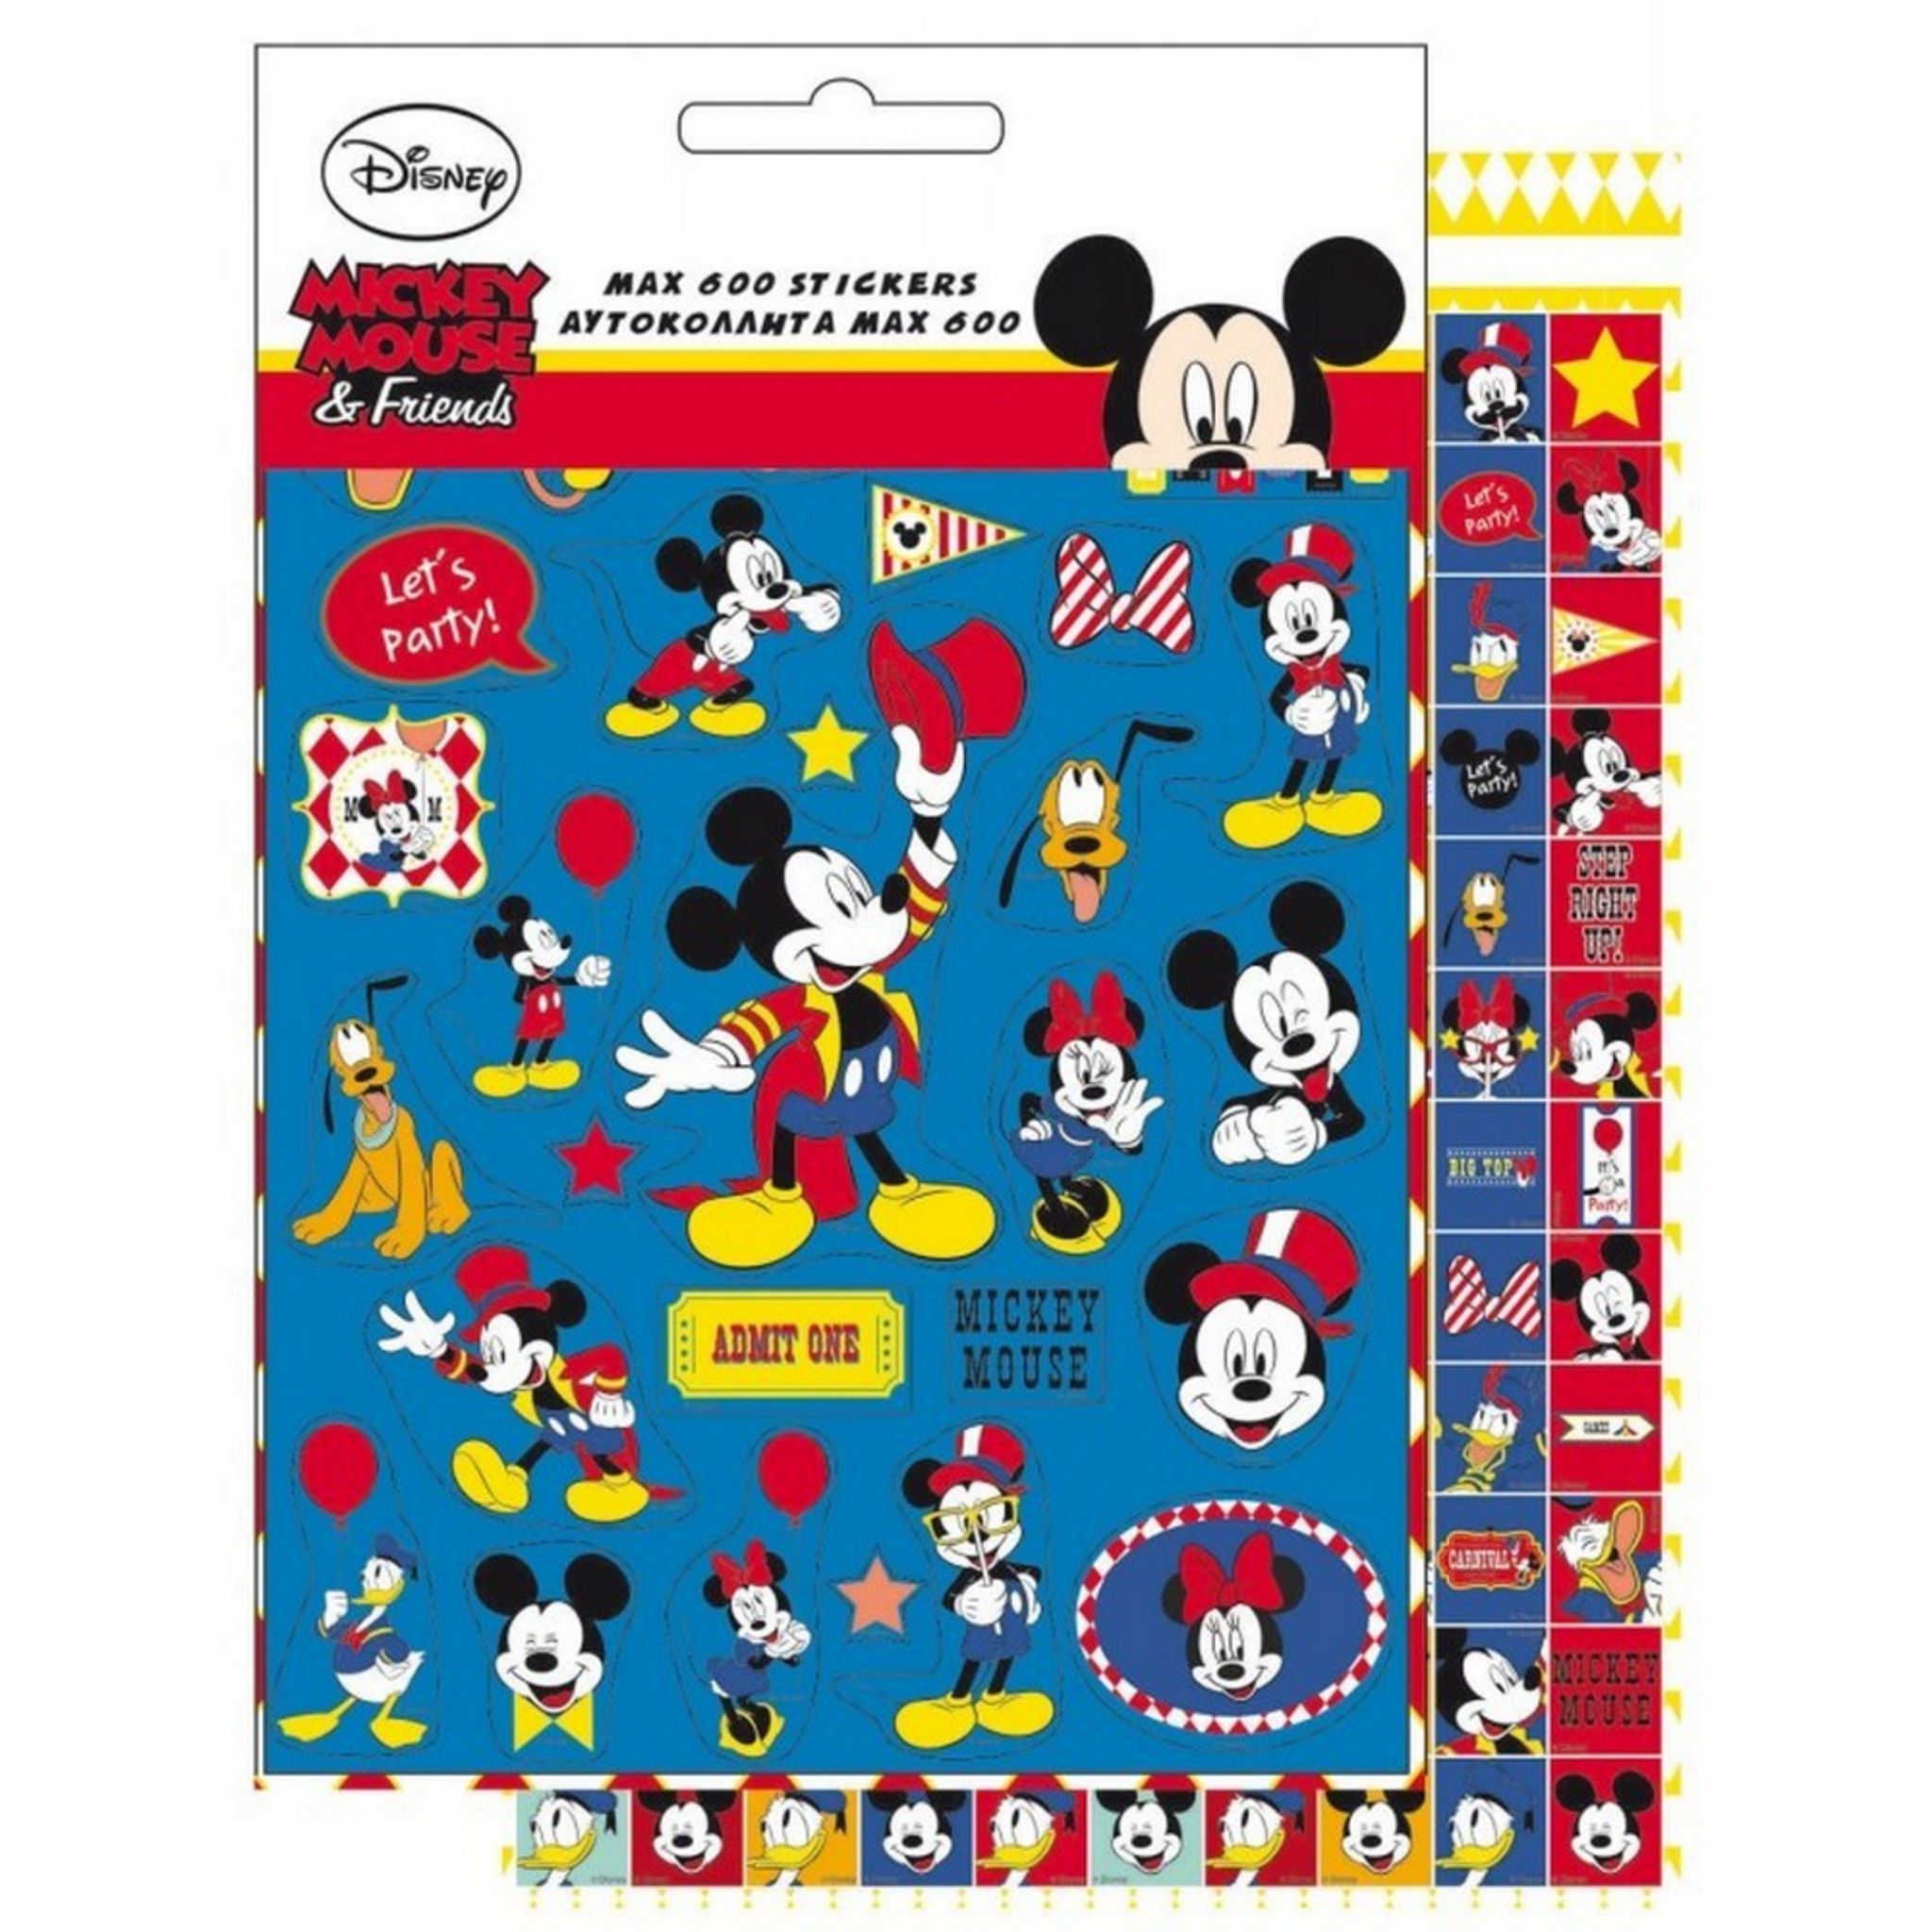 Pat Patrouille 600 stickers La pat patrouille Disney enfant Autocollant pas  cher 